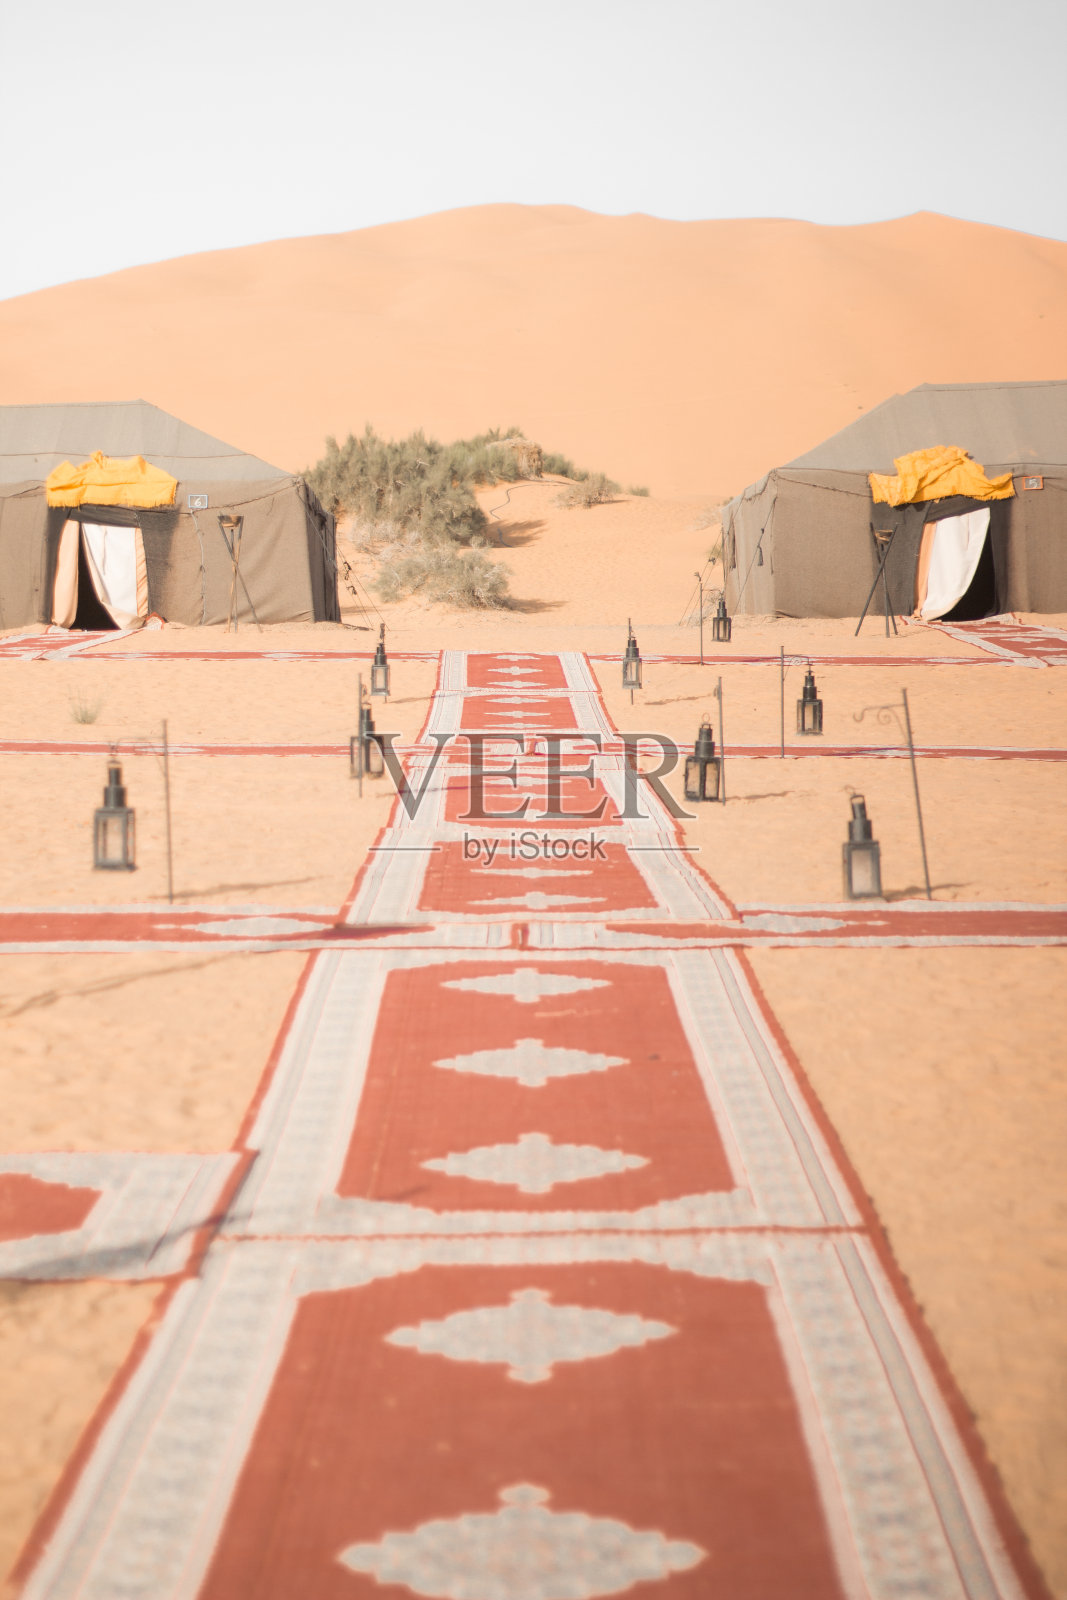 在摩洛哥沙漠。撒哈拉沙漠。灯和地毯。柔和的颜色。摩洛哥的文化。照片摄影图片